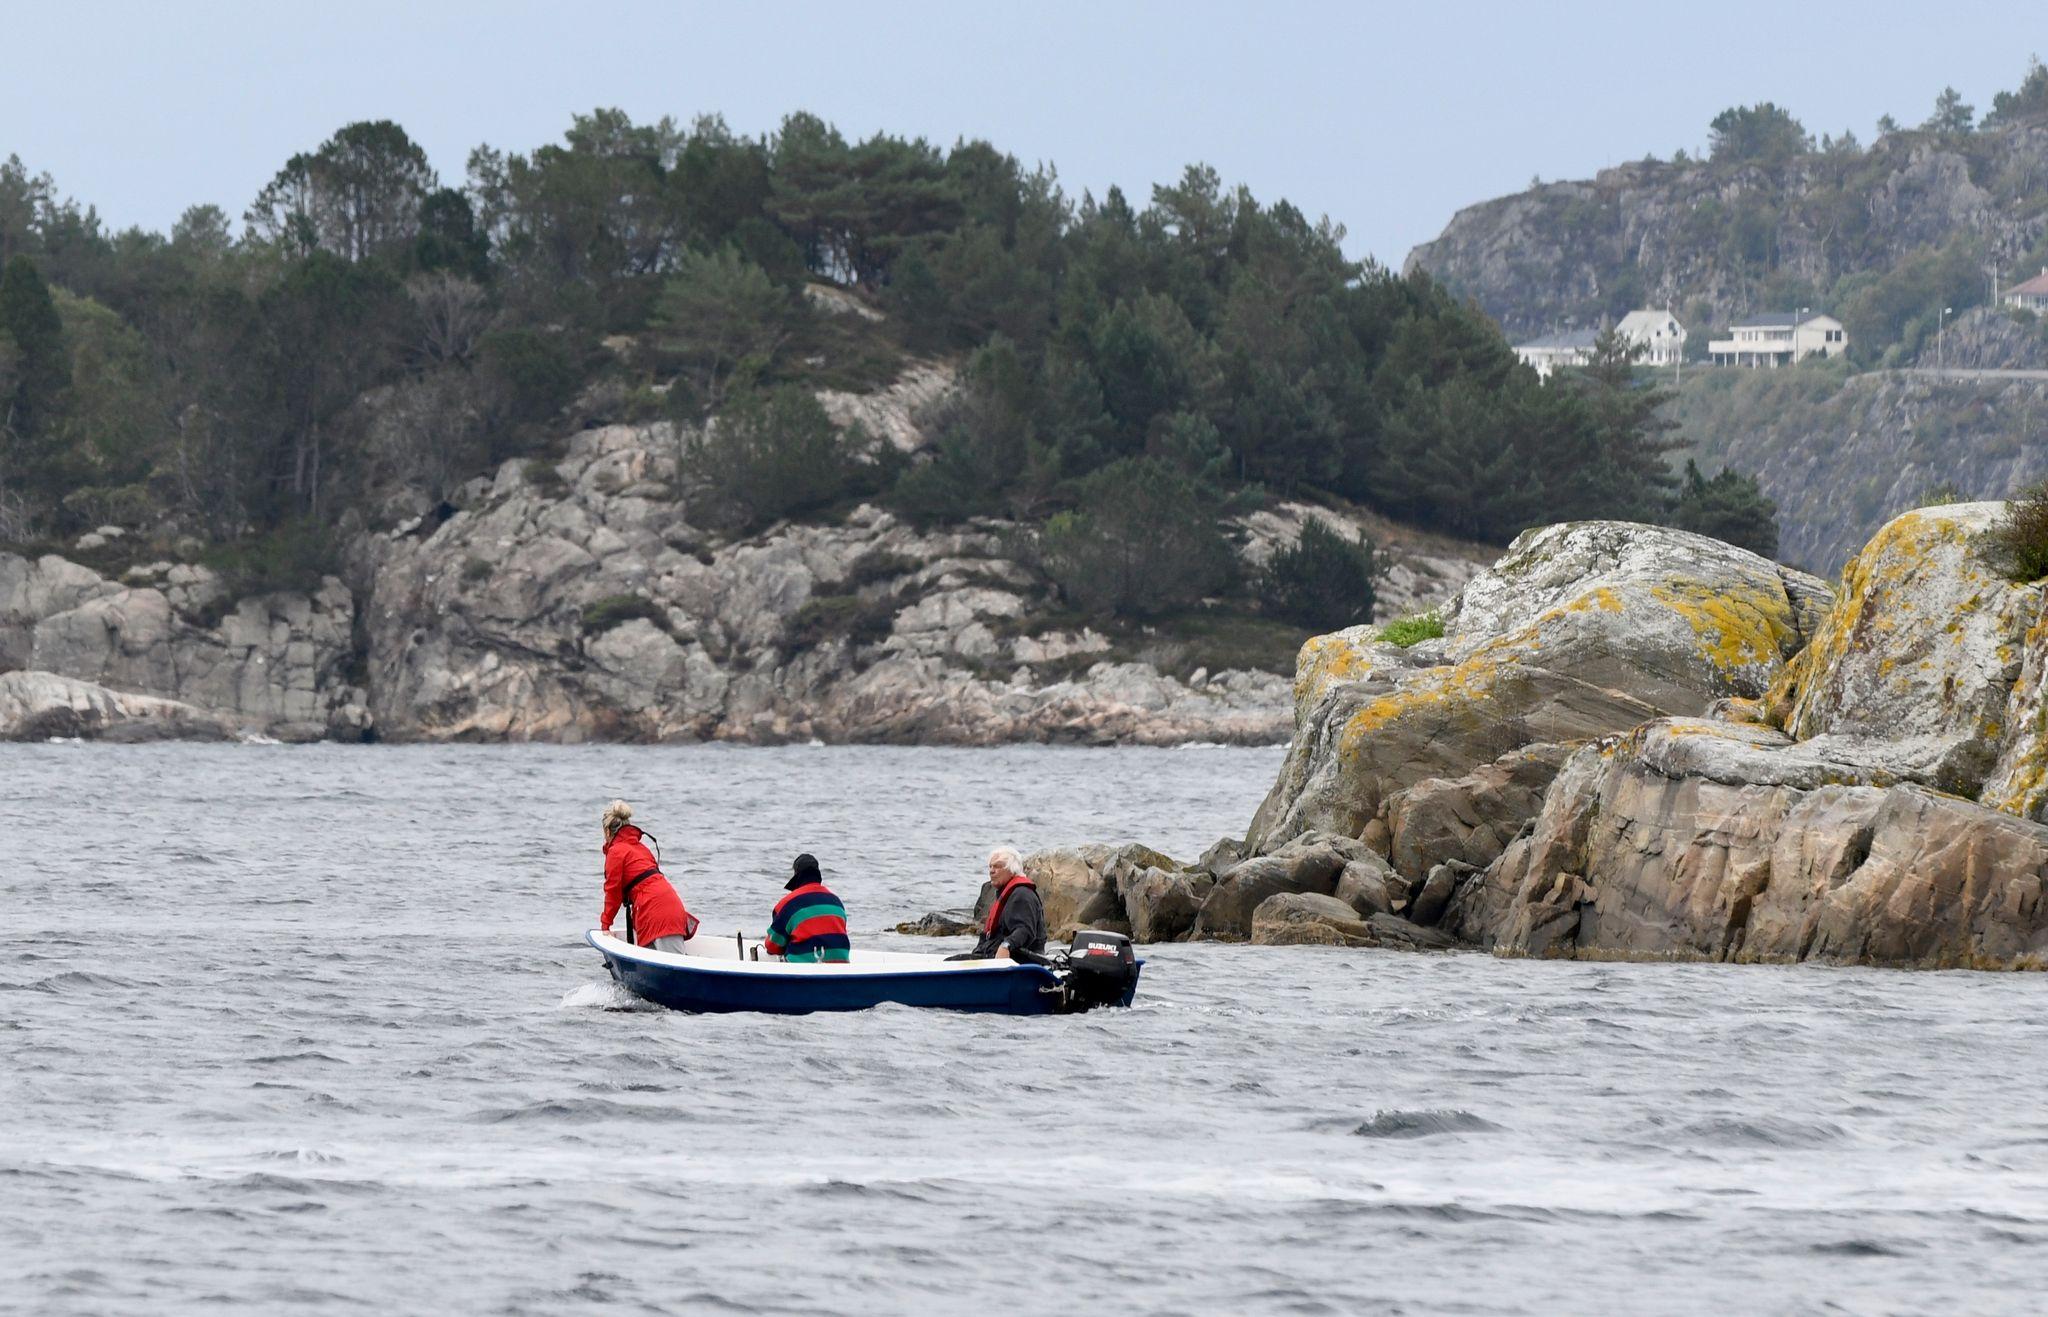  Flere frivillige deltar i søket etter mannen som falt i sjøen i Hjeltefjorden. 